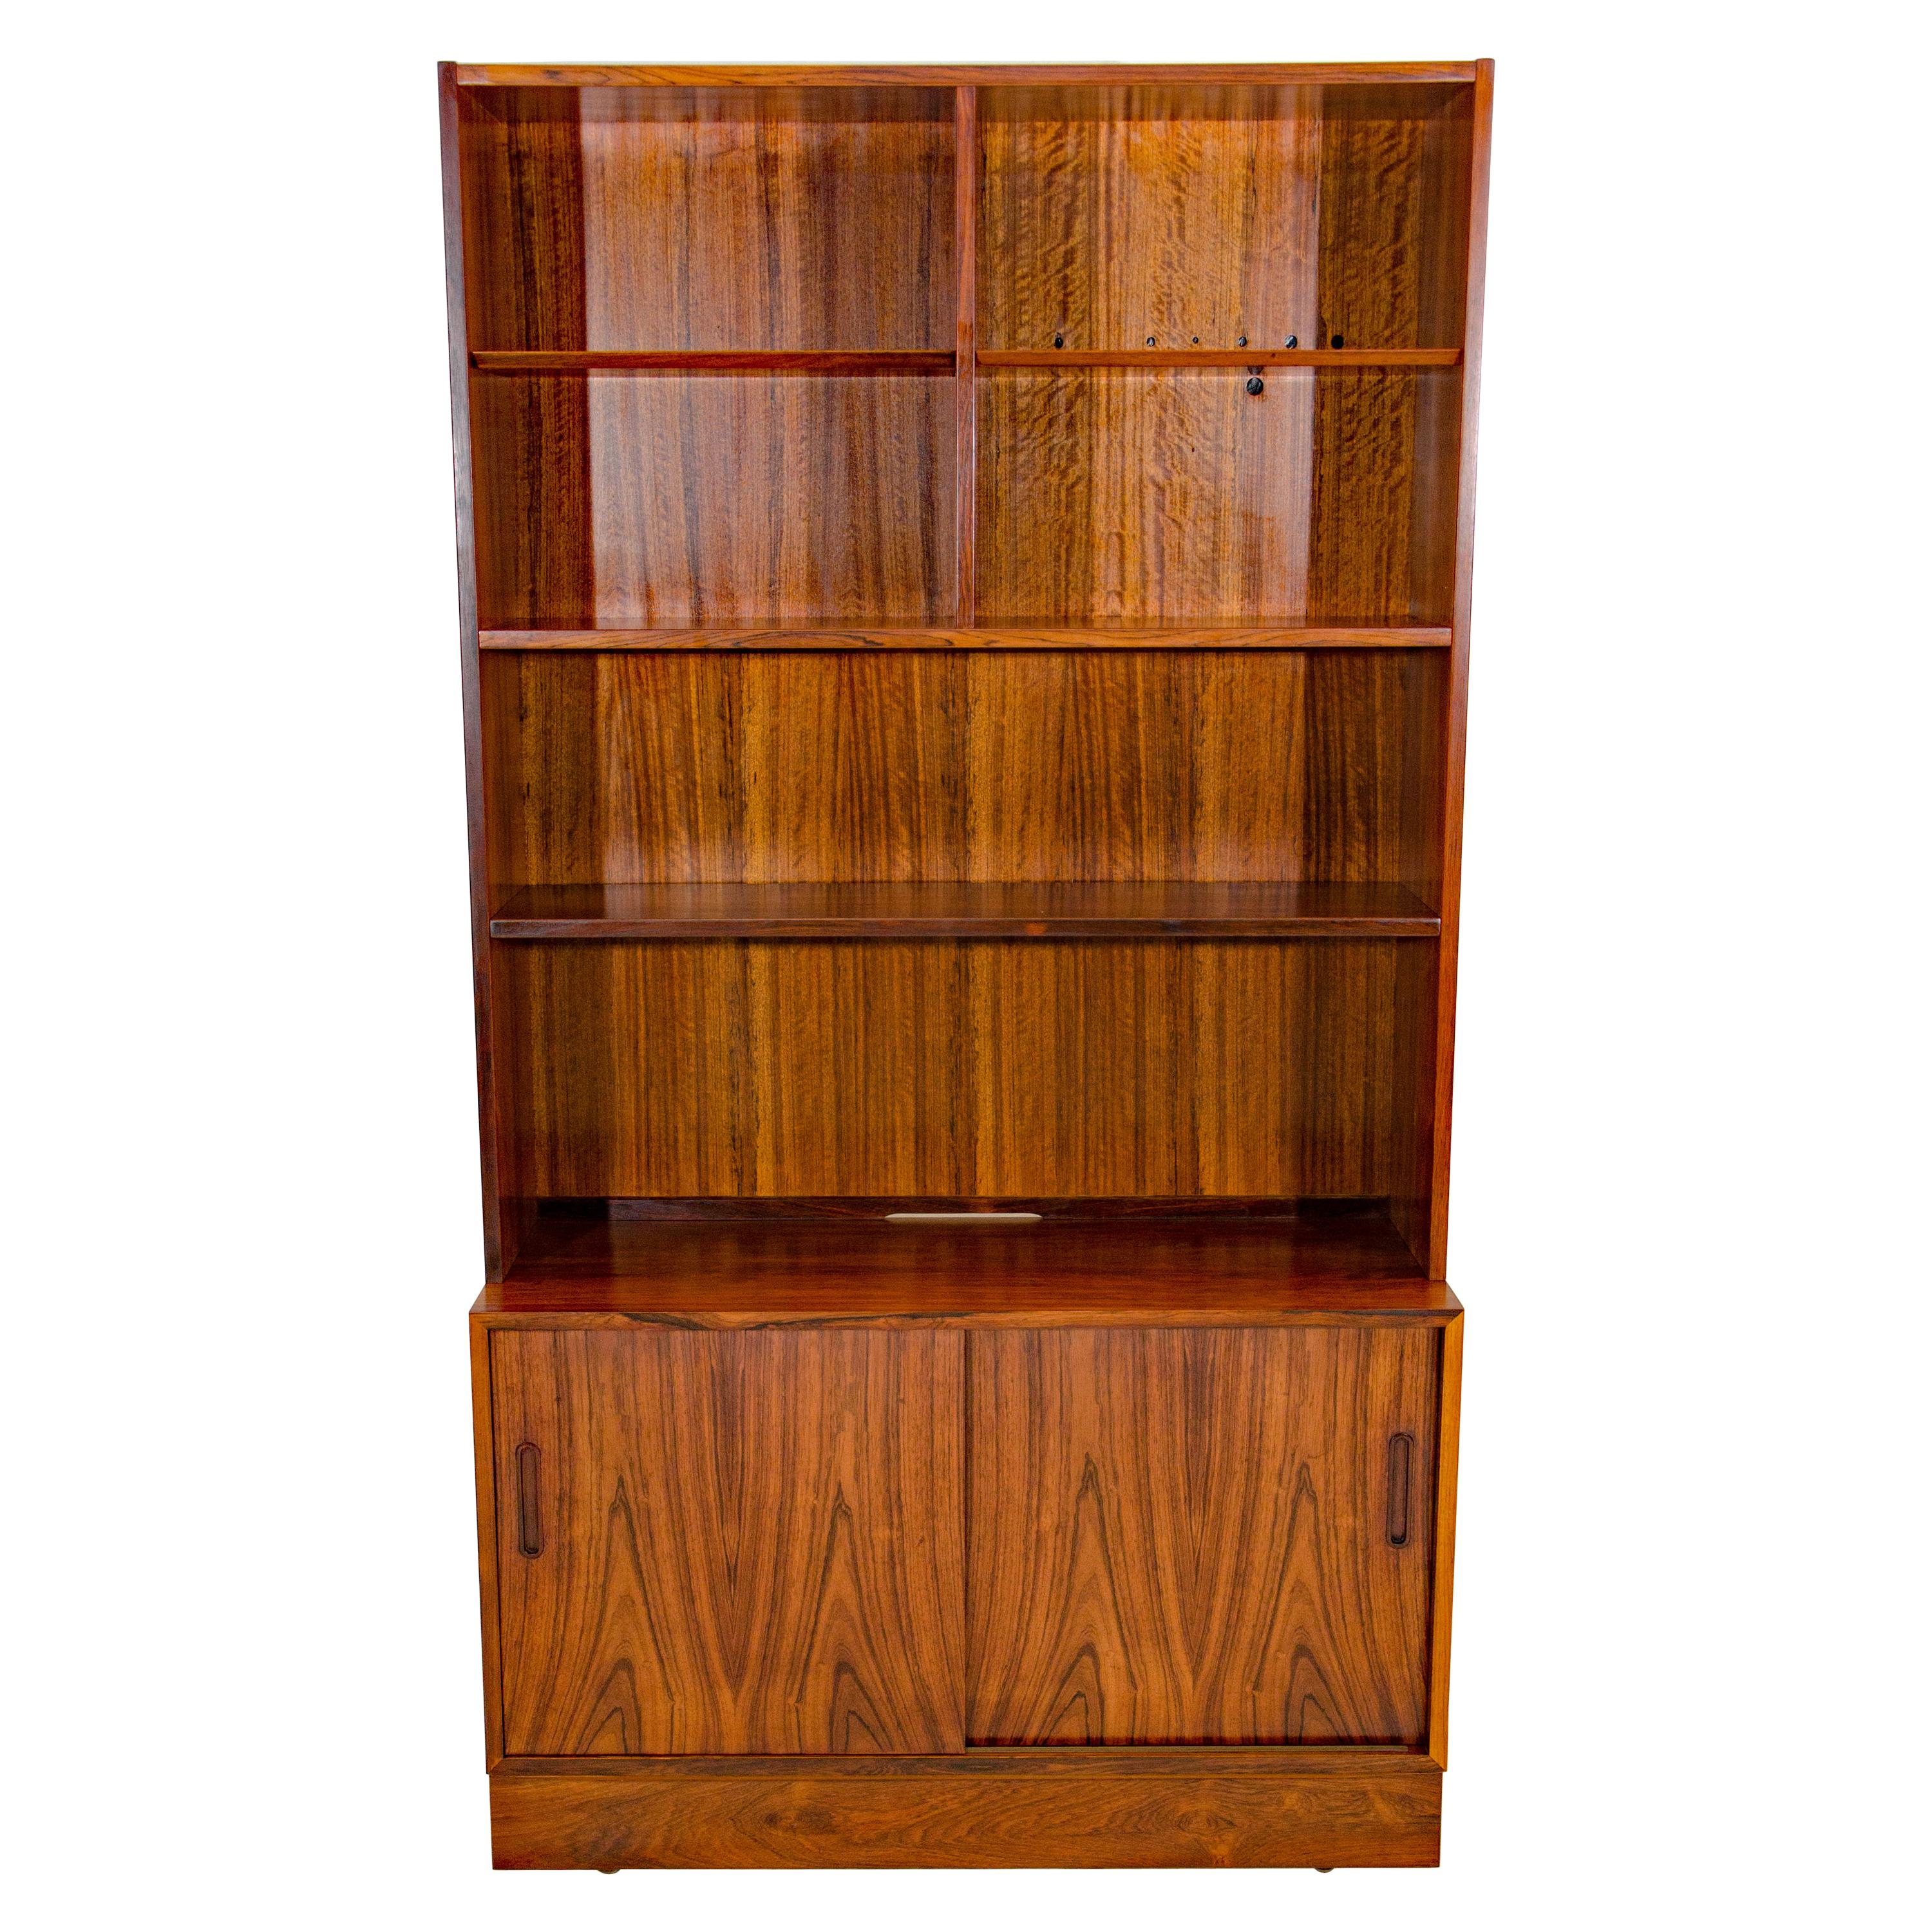 Danish Rosewood Shelf Bookcase on Cabinet Base, Poul Hundevad